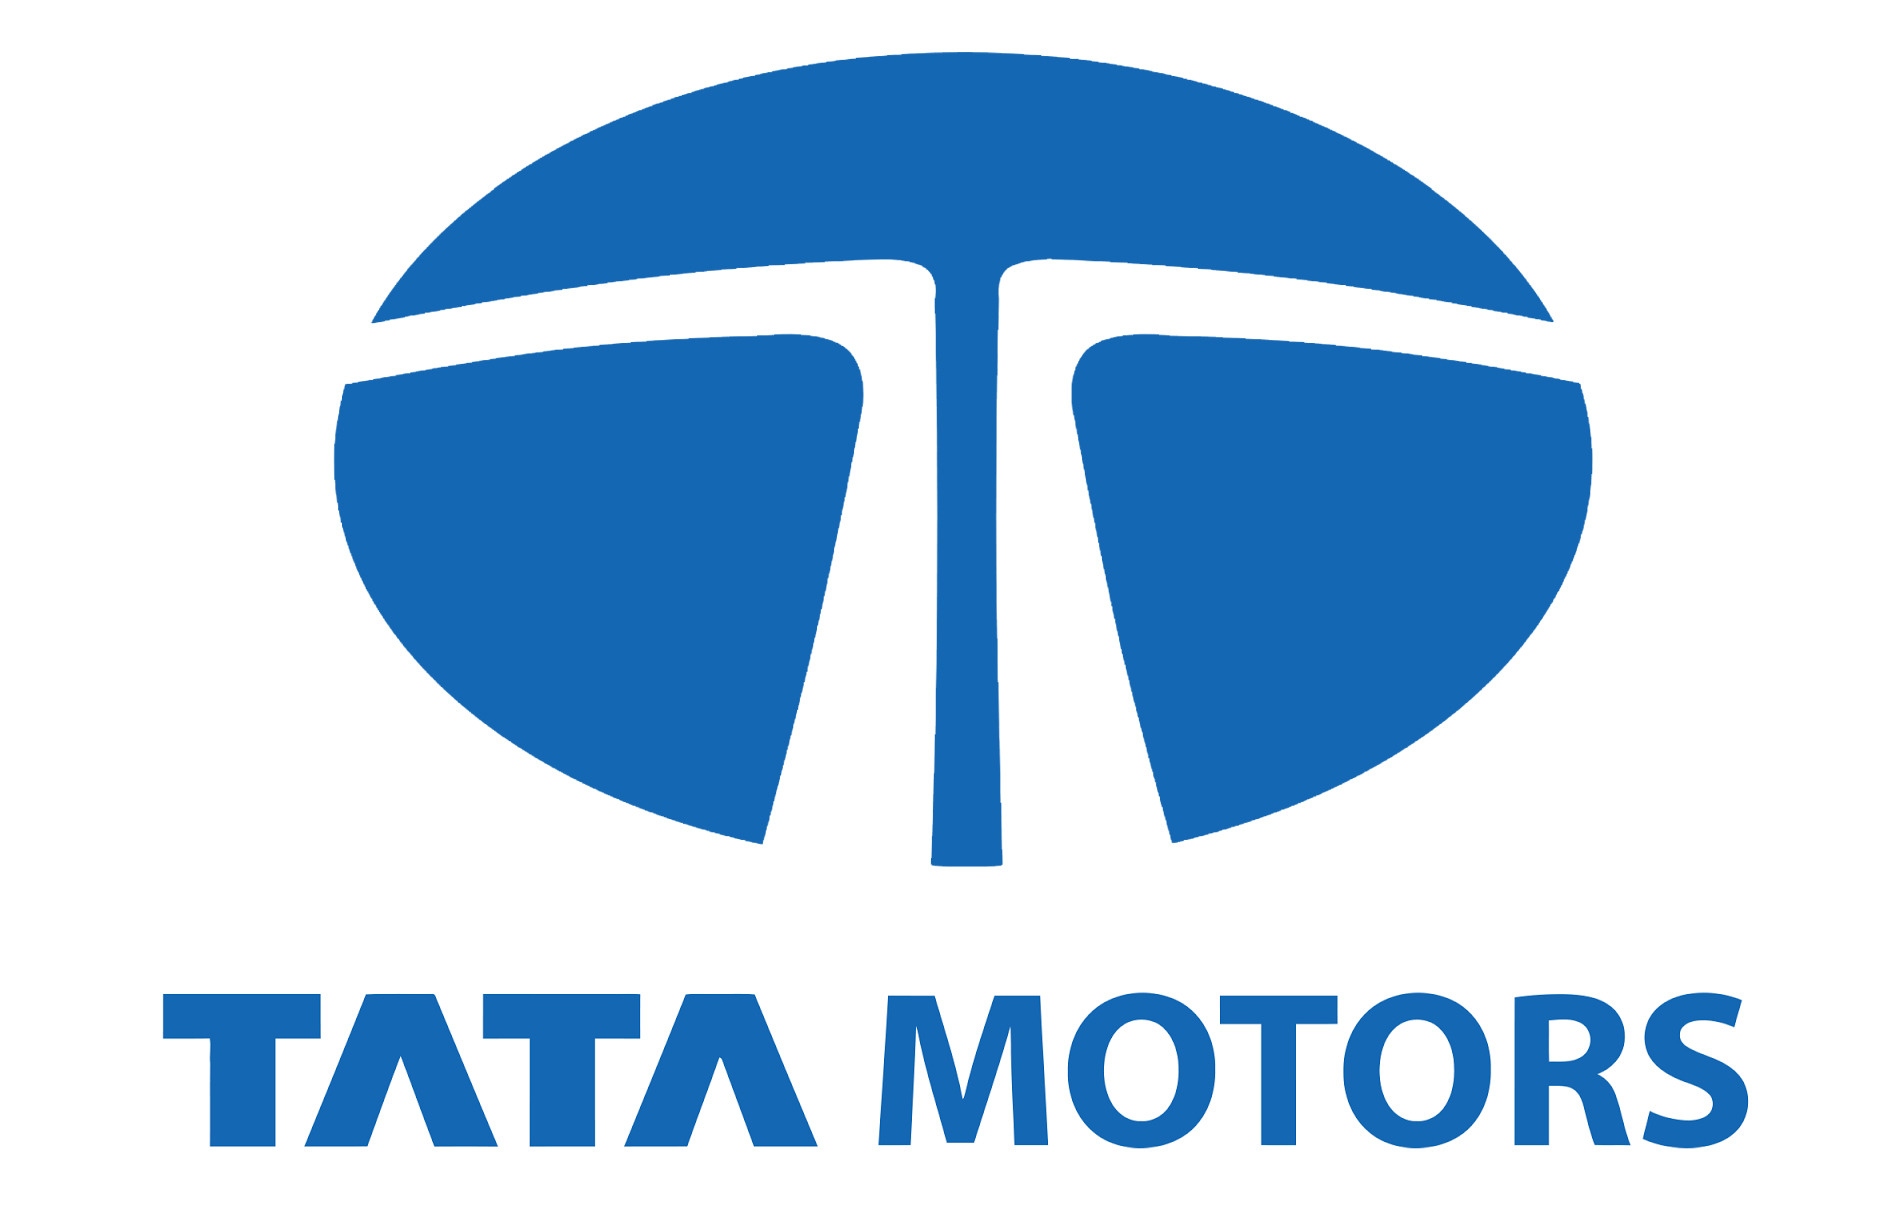 MAC Vehicles Pvt Ltd - Tata Motors|Show Room|Automotive